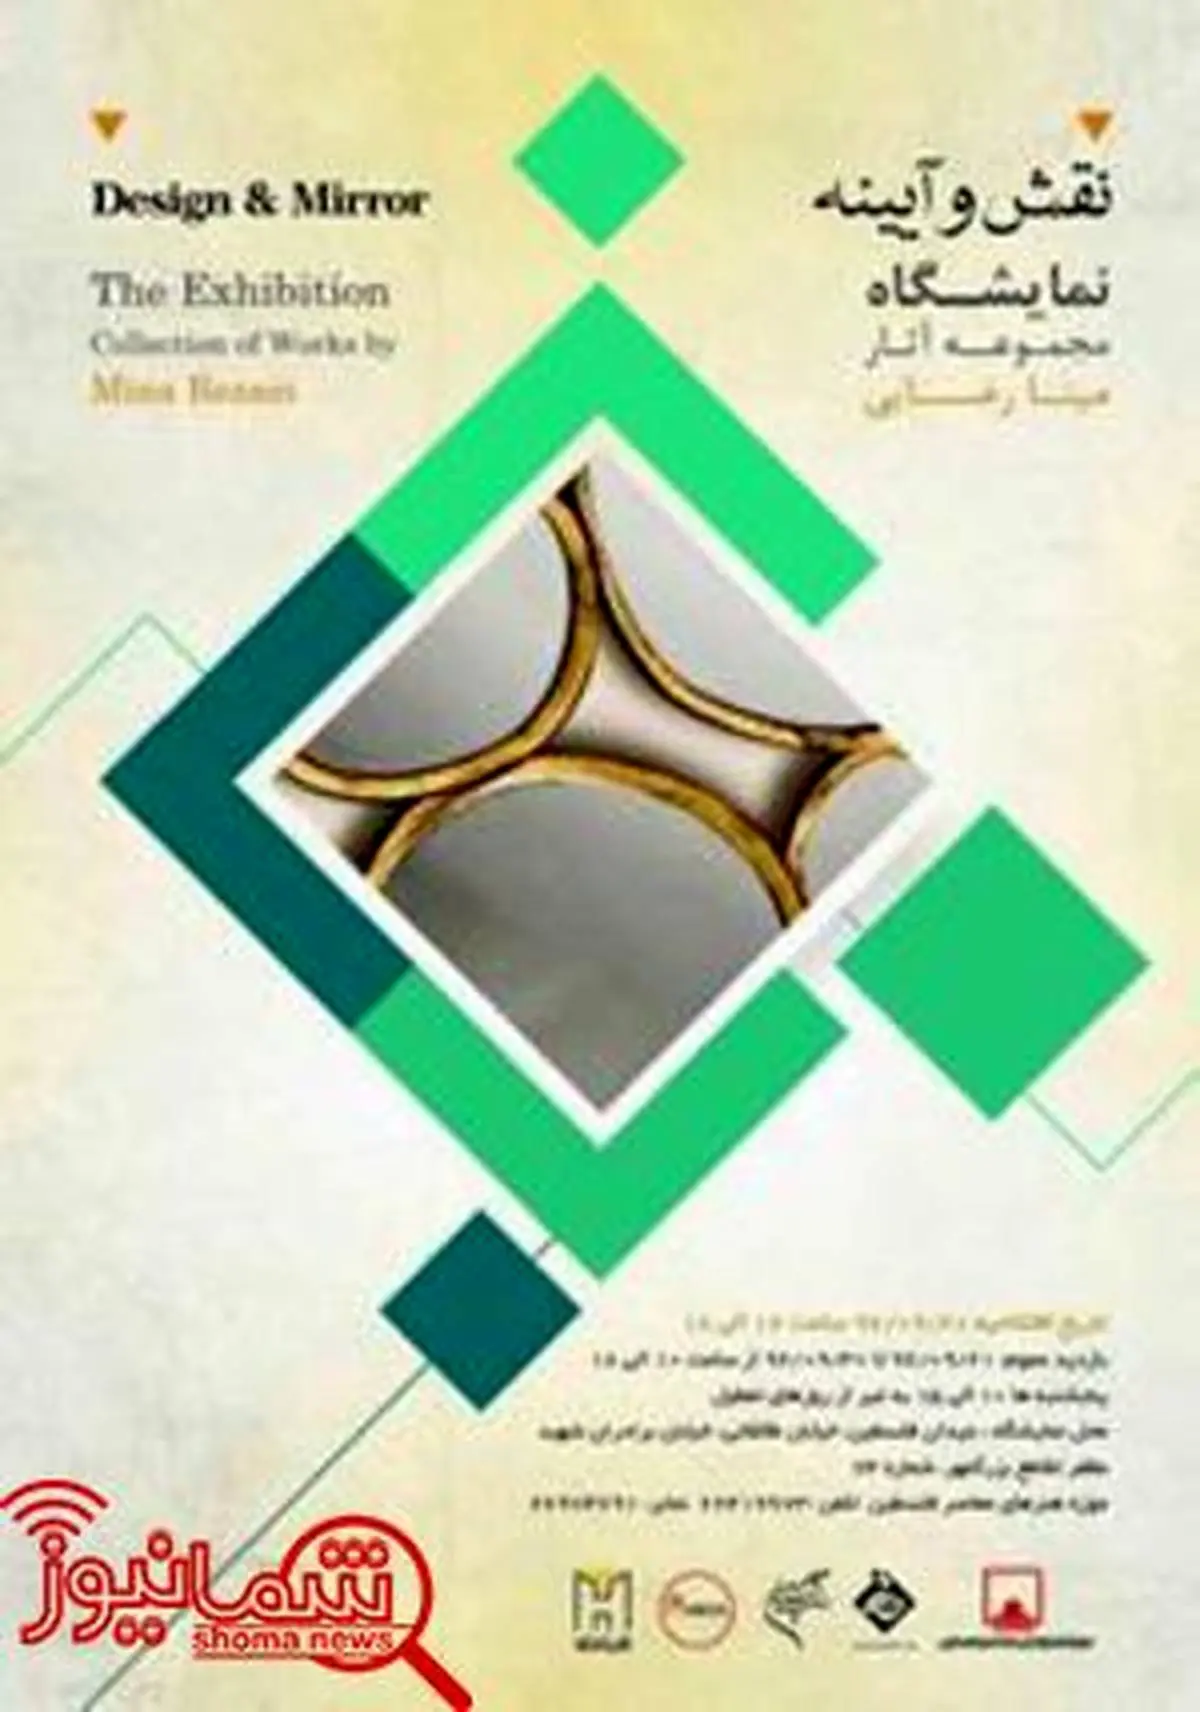 نمایشگاه «نقش و آیینه» در موزه فلسطین برگزار می شود